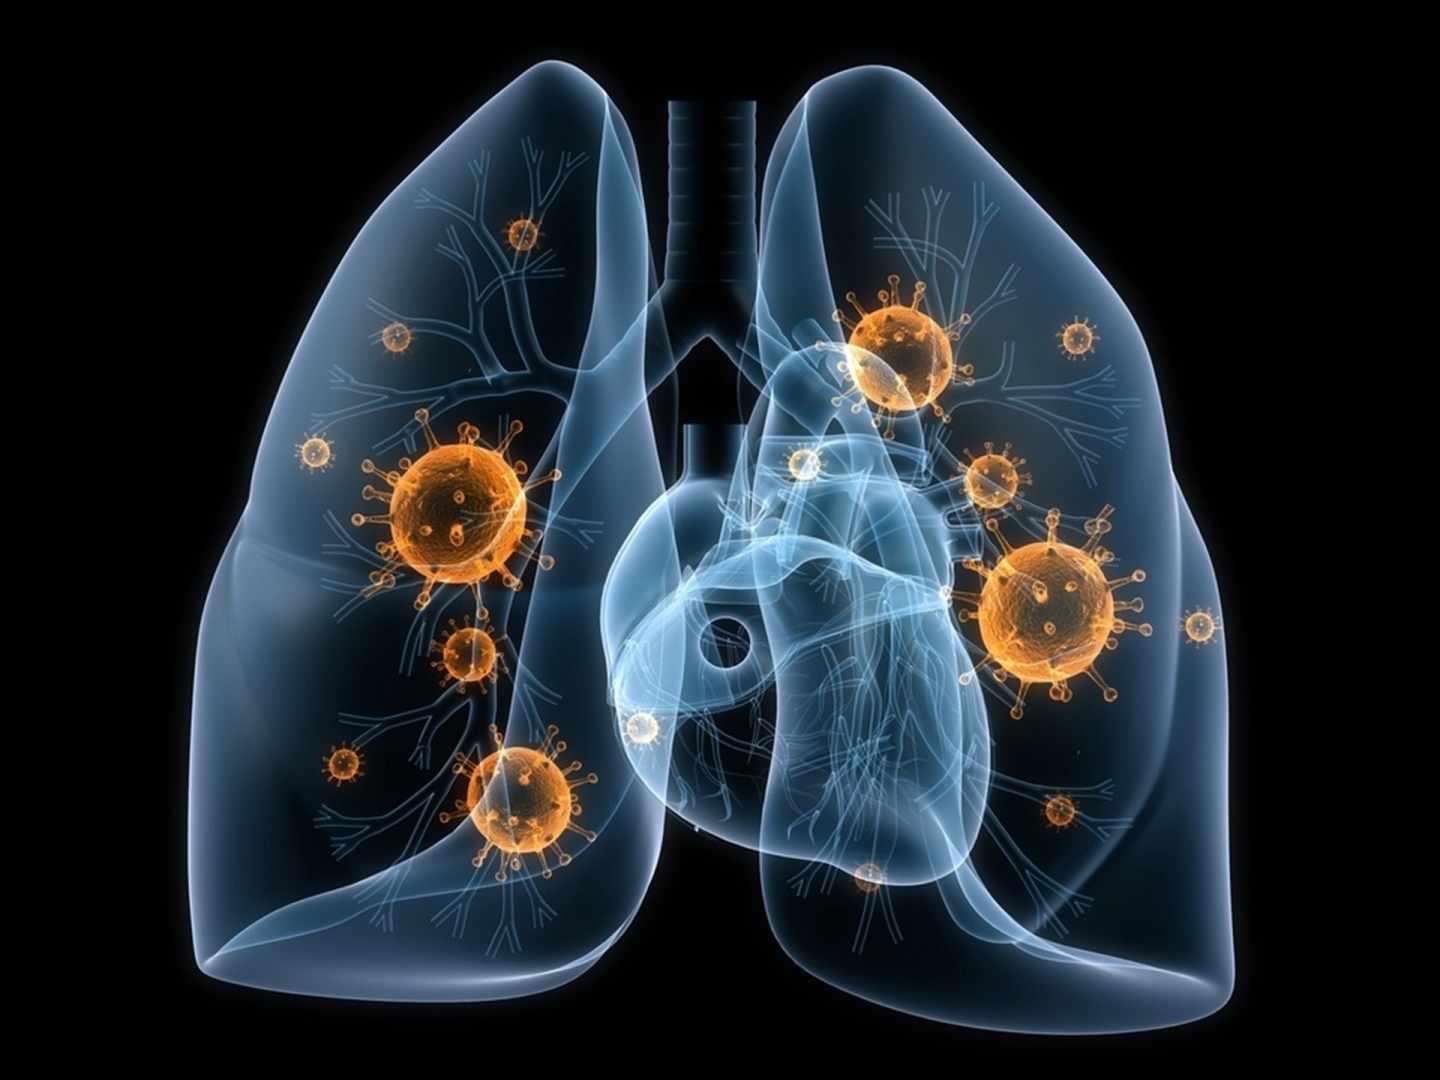 Por qué aumenta el cáncer de pulmón en no fumadores: polución y tabaquismo pasivo